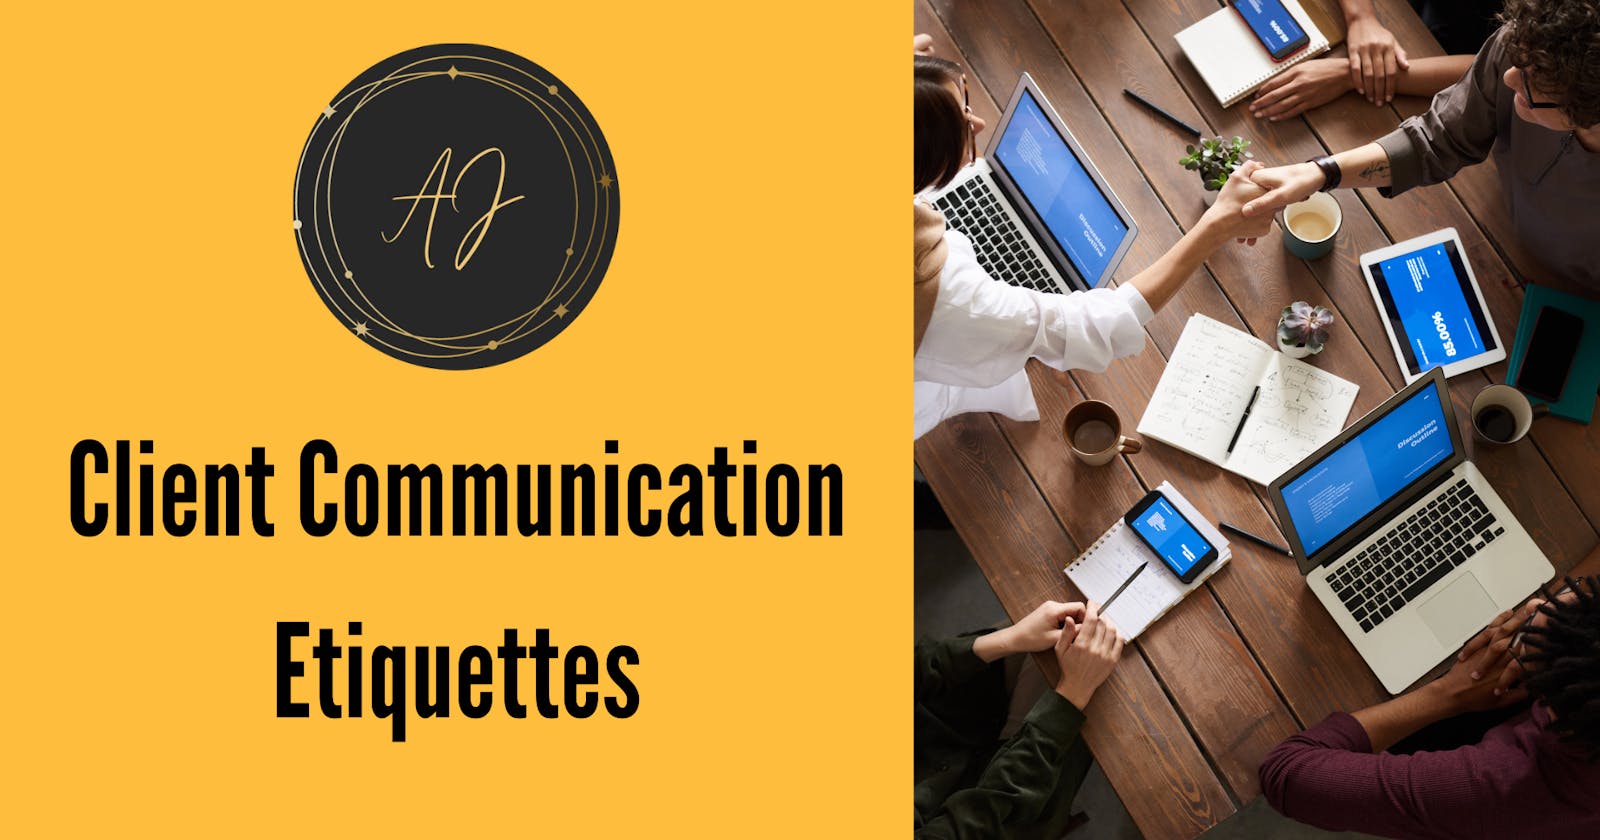 Client communication etiquettes